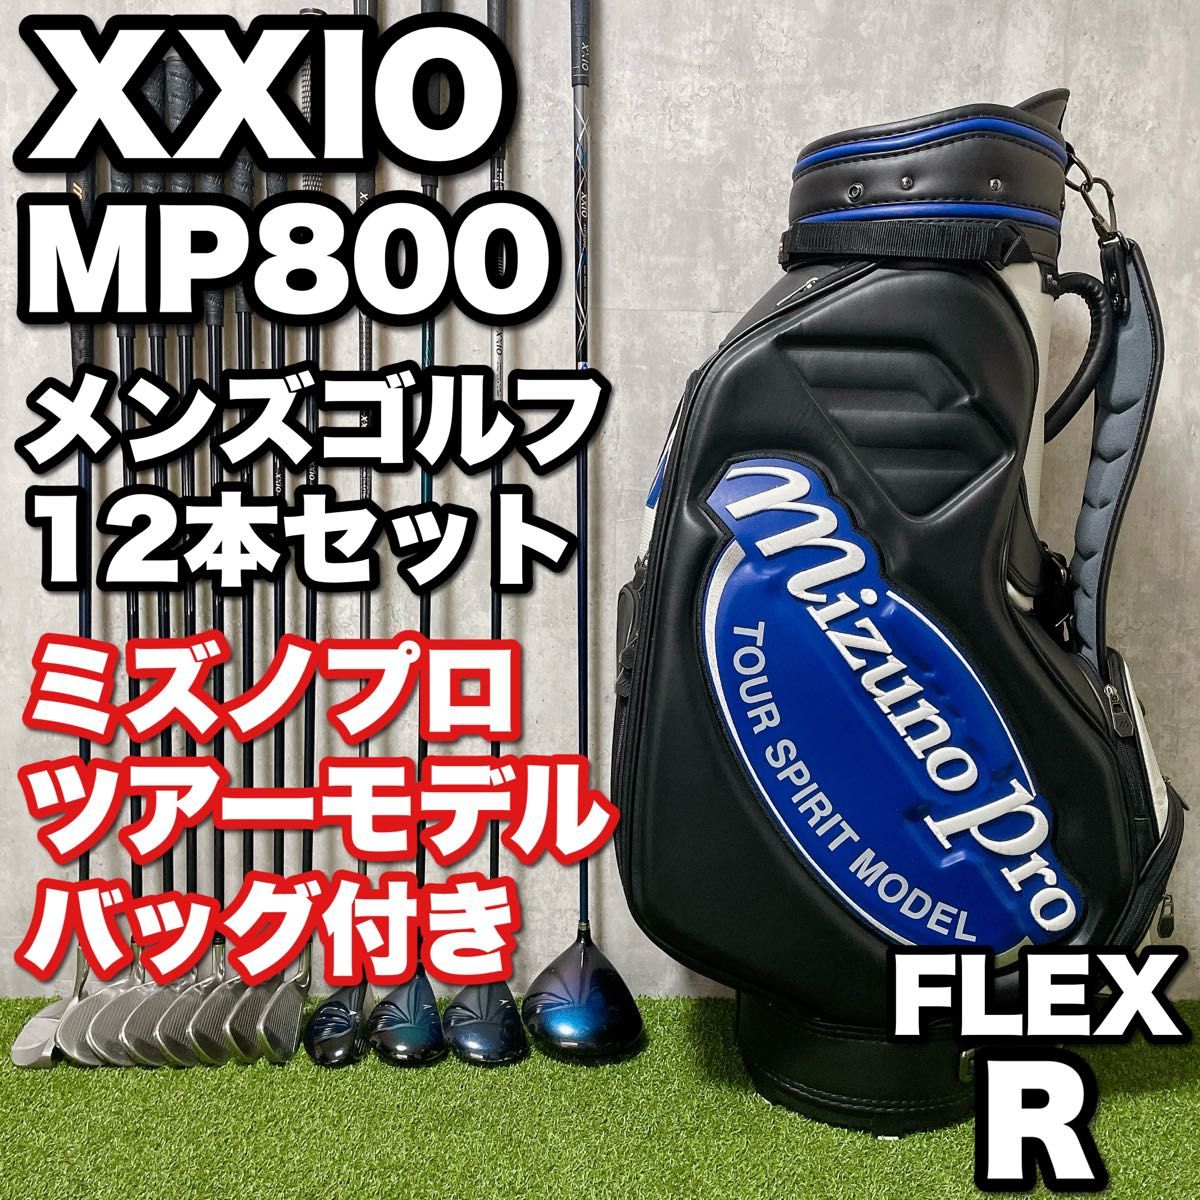 XXIO ゼクシオ MP800 メンズ ゴルフクラブ 12本セット ミズノプロ ツアーモデルキャディバッグ付き 初心者 男性